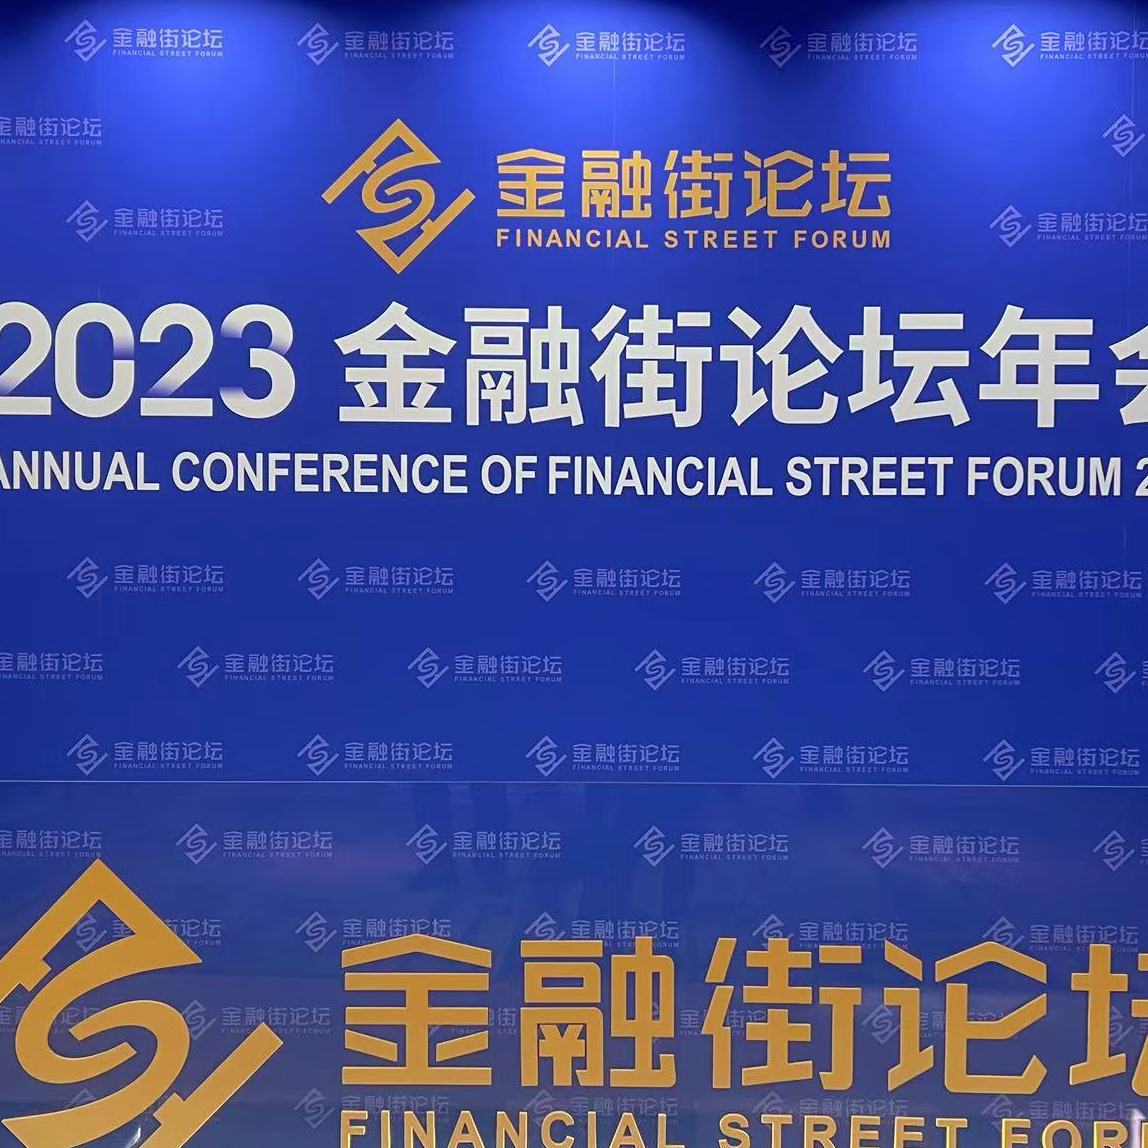 驱动未来经济发展，雅仕维传媒林德兴先生出席2023金融街论坛做专题分享